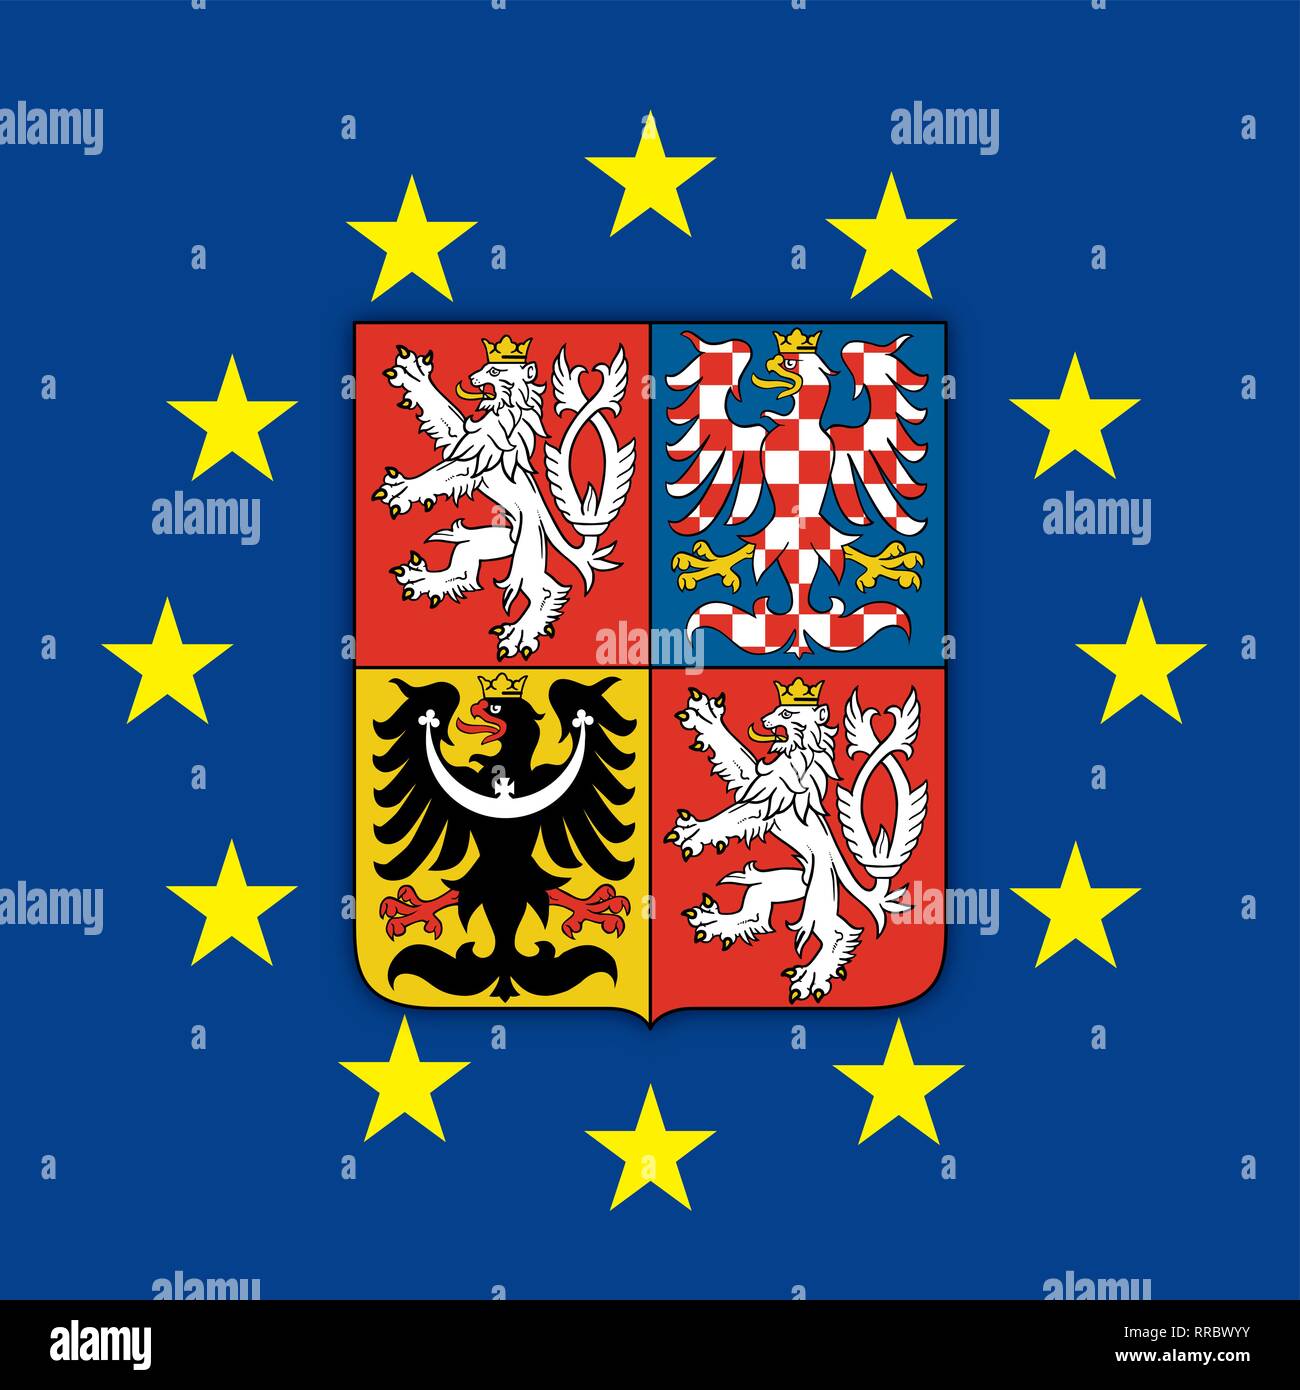 Autriche armoiries sur le drapeau de l'Union européenne, la République tchèque d'illustration vectorielle armoiries sur le drapeau de l'Union européenne, vector illustration Illustration de Vecteur